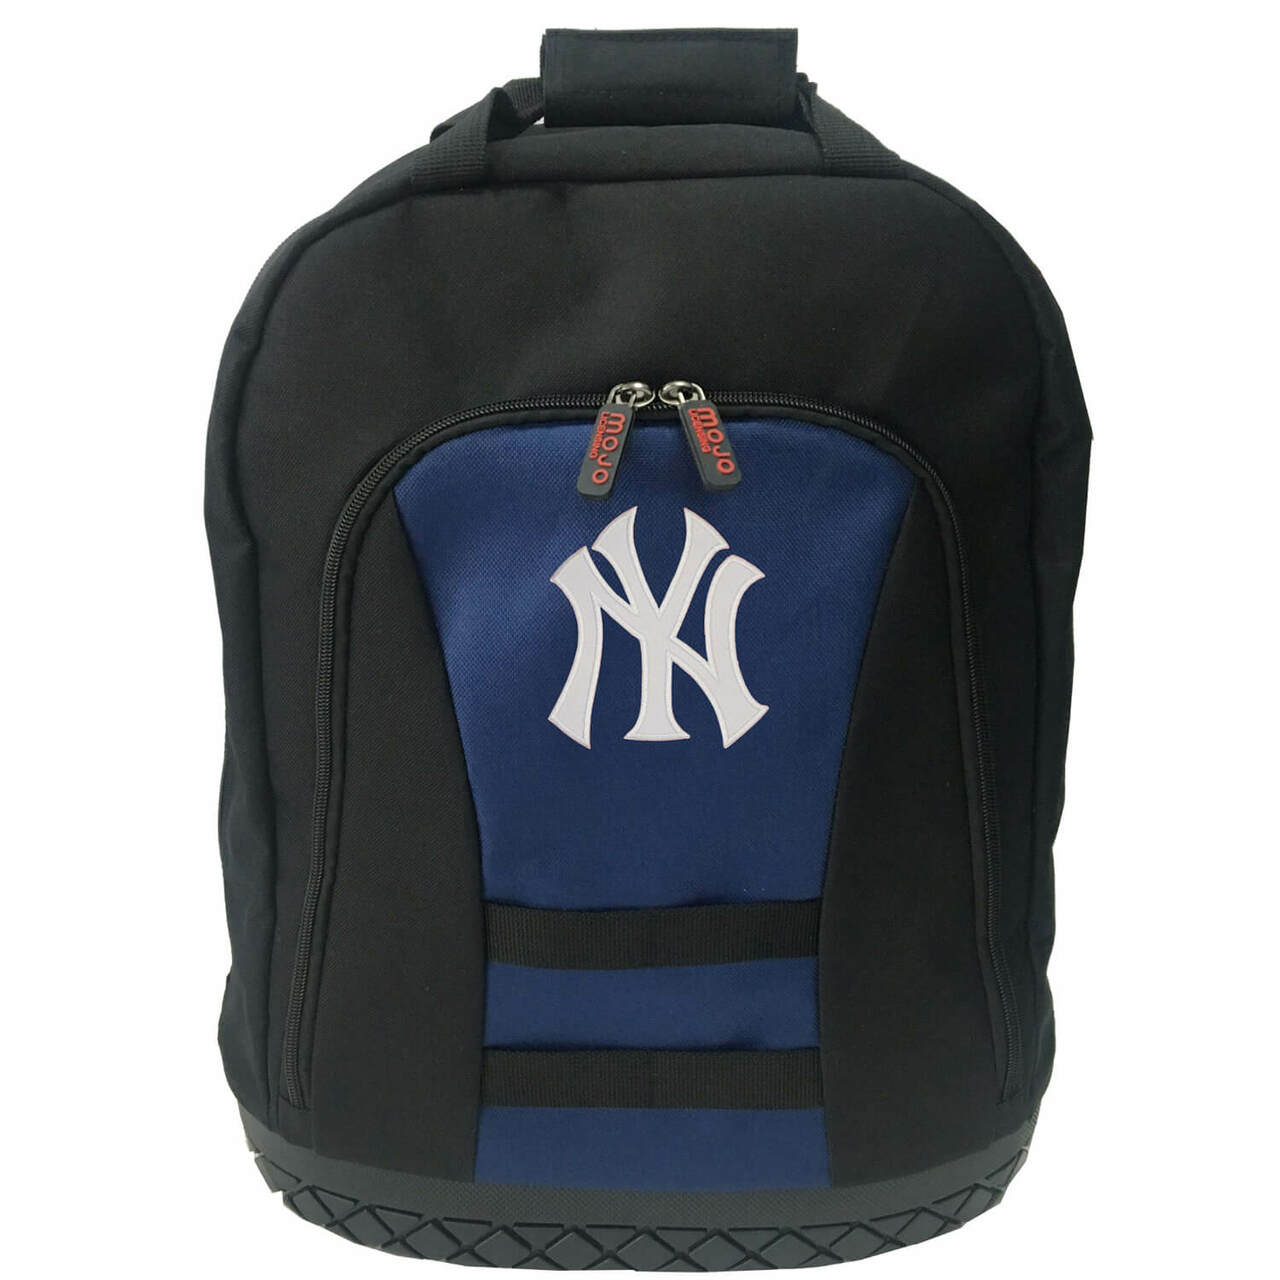 New York Yankees Tool Bag Backpack